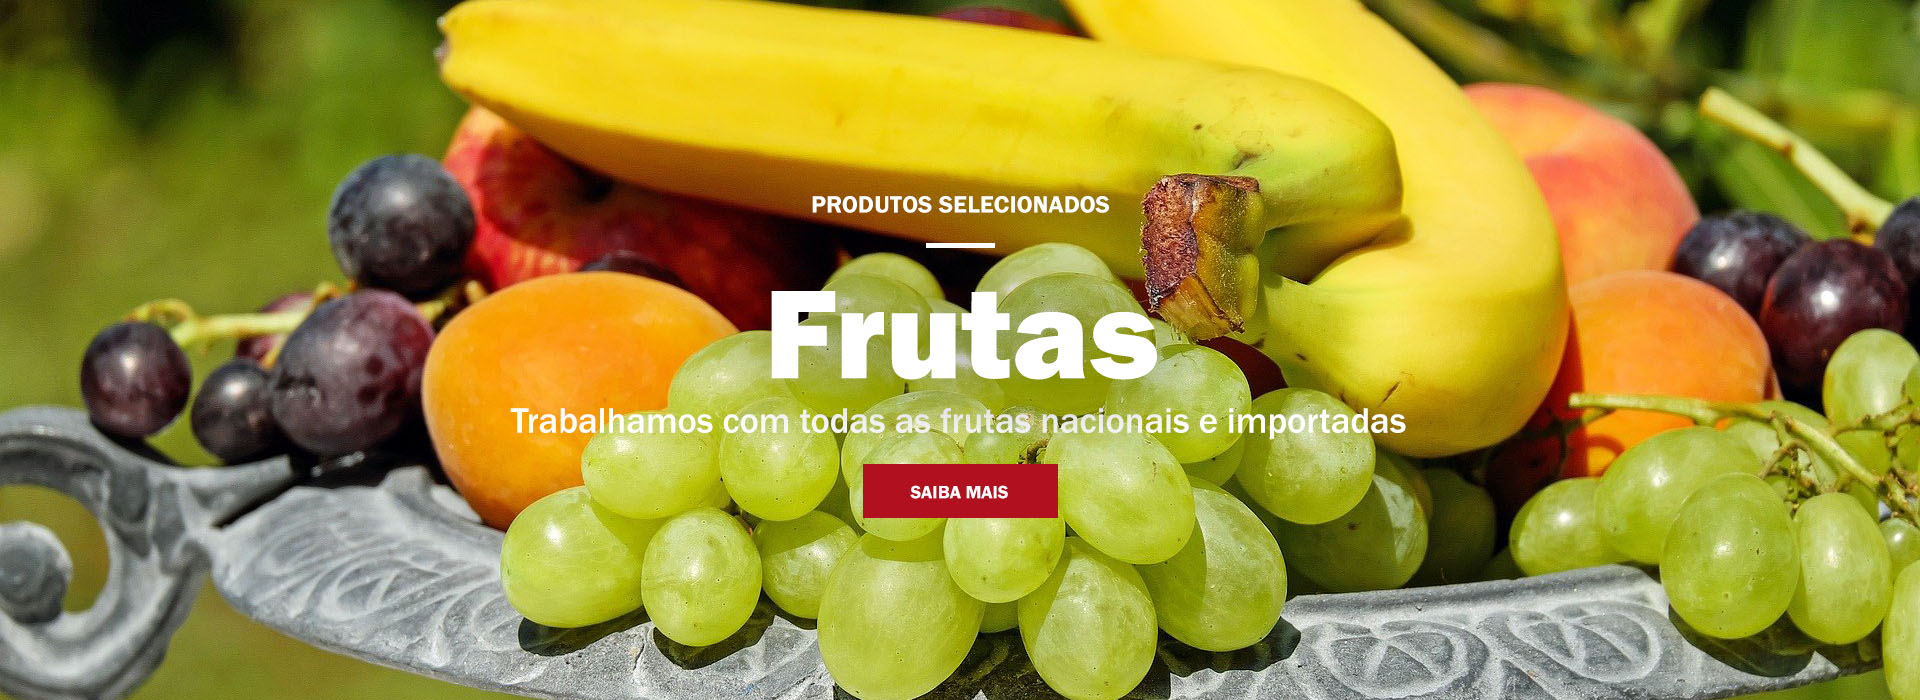 Itimirim Legumes Frutas e Verduras de Qualidade